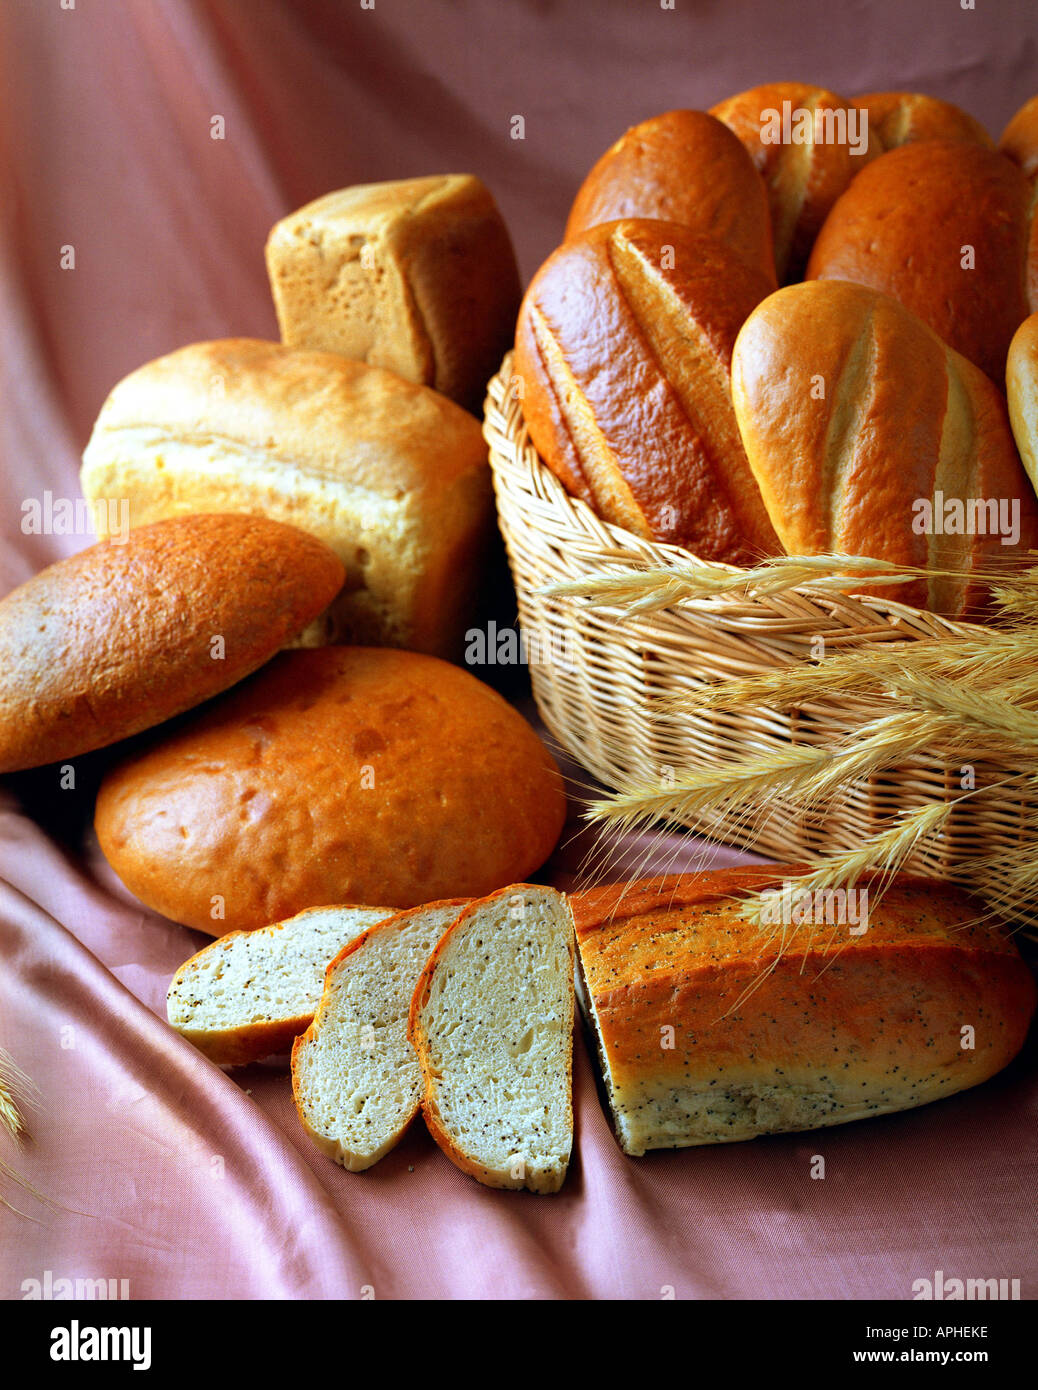 Un close up ritratto di alcune focacce di pane appena sfornato visualizzato in un piccolo cesto in vimini Foto Stock